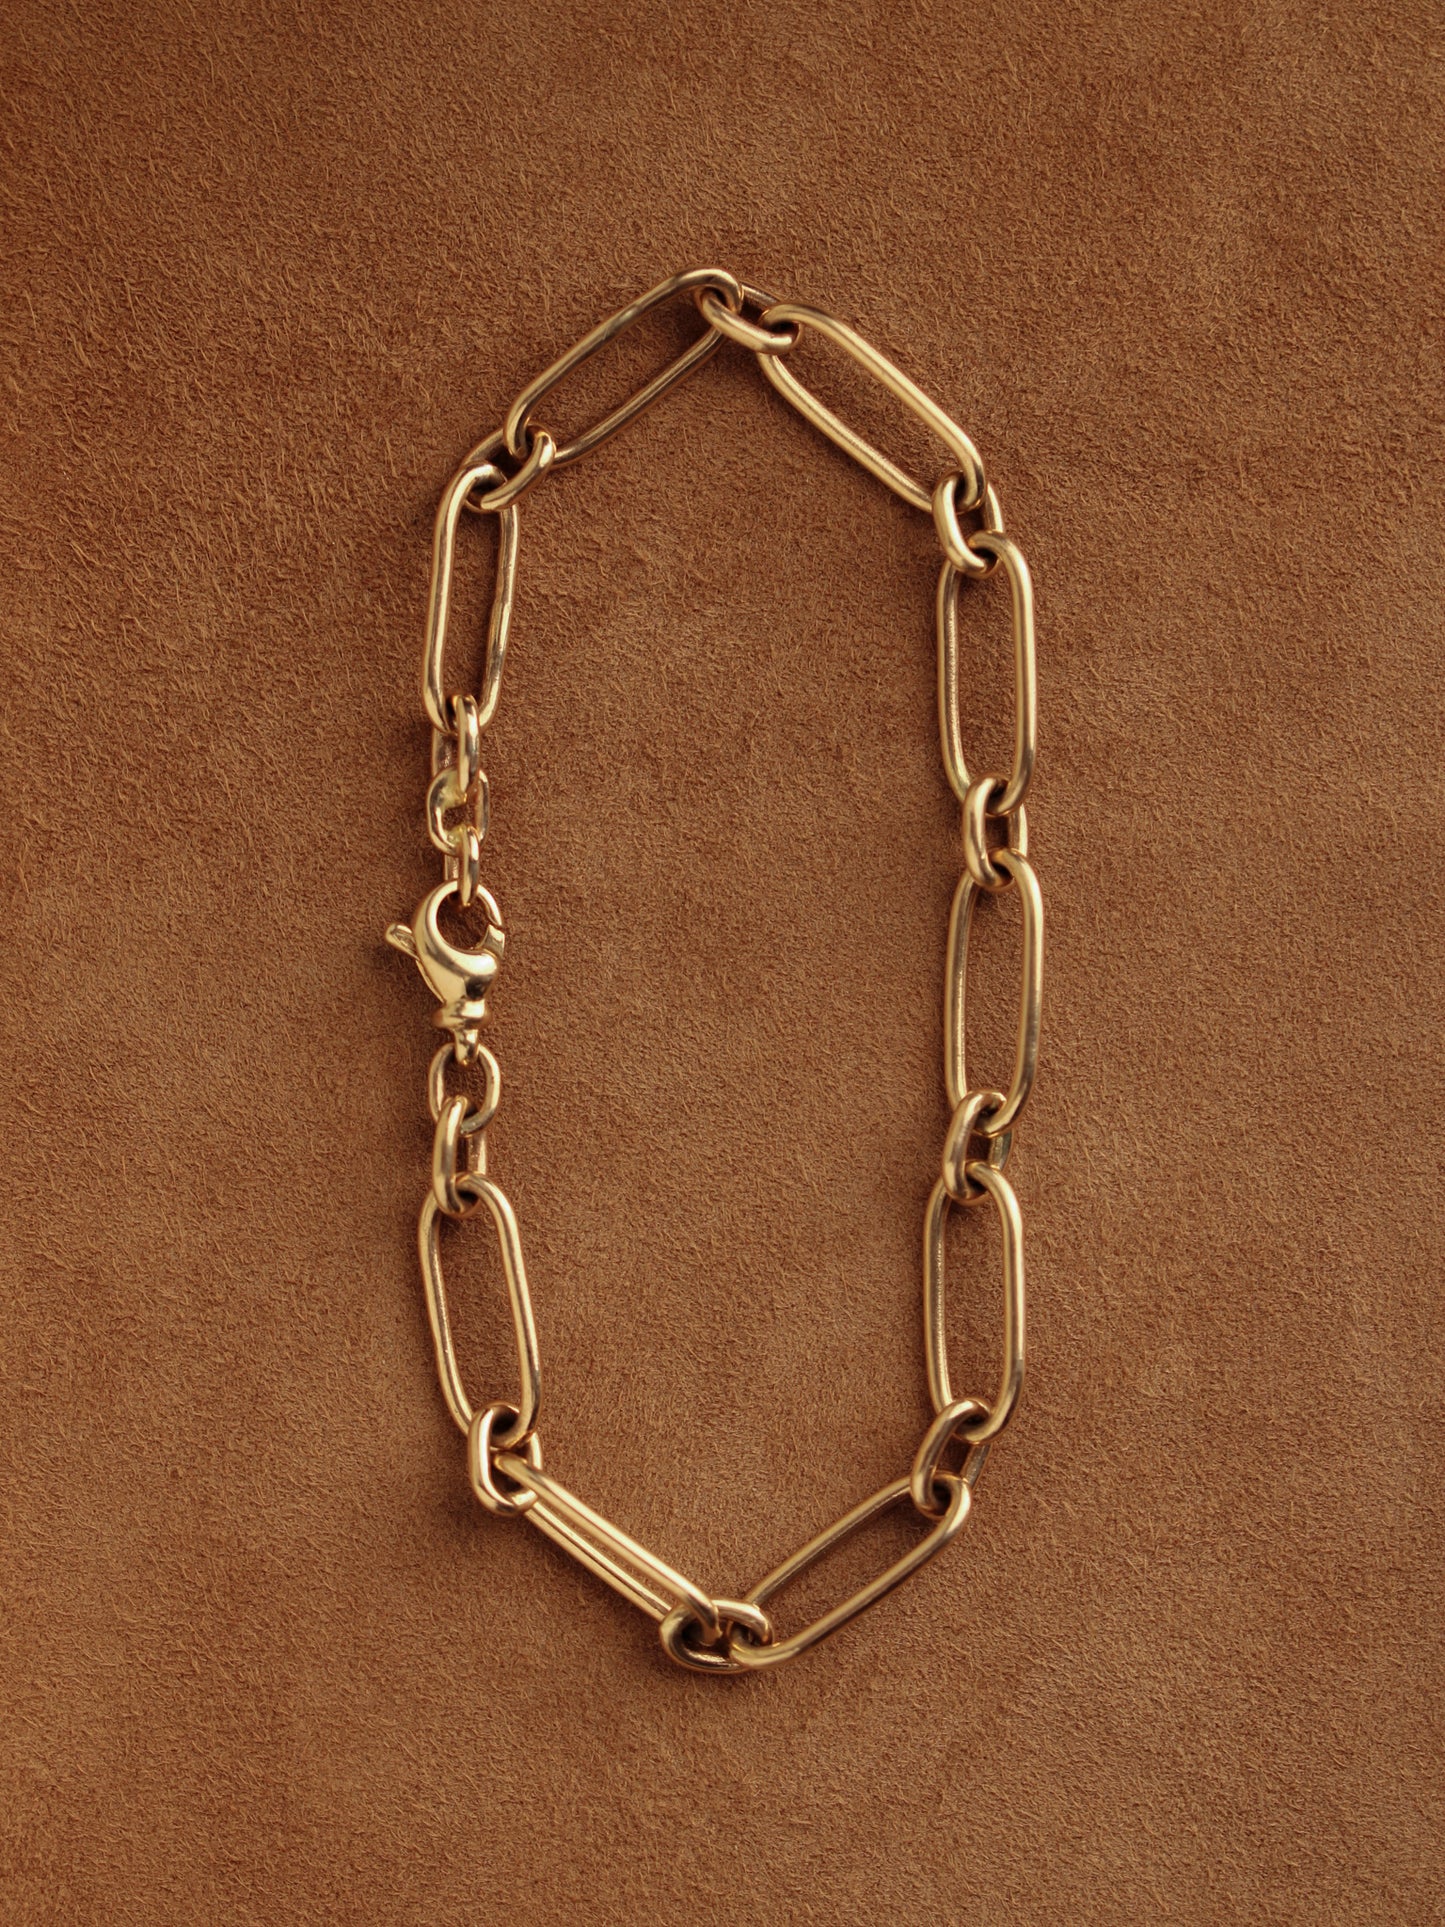 Long & Short Chain Bracelet